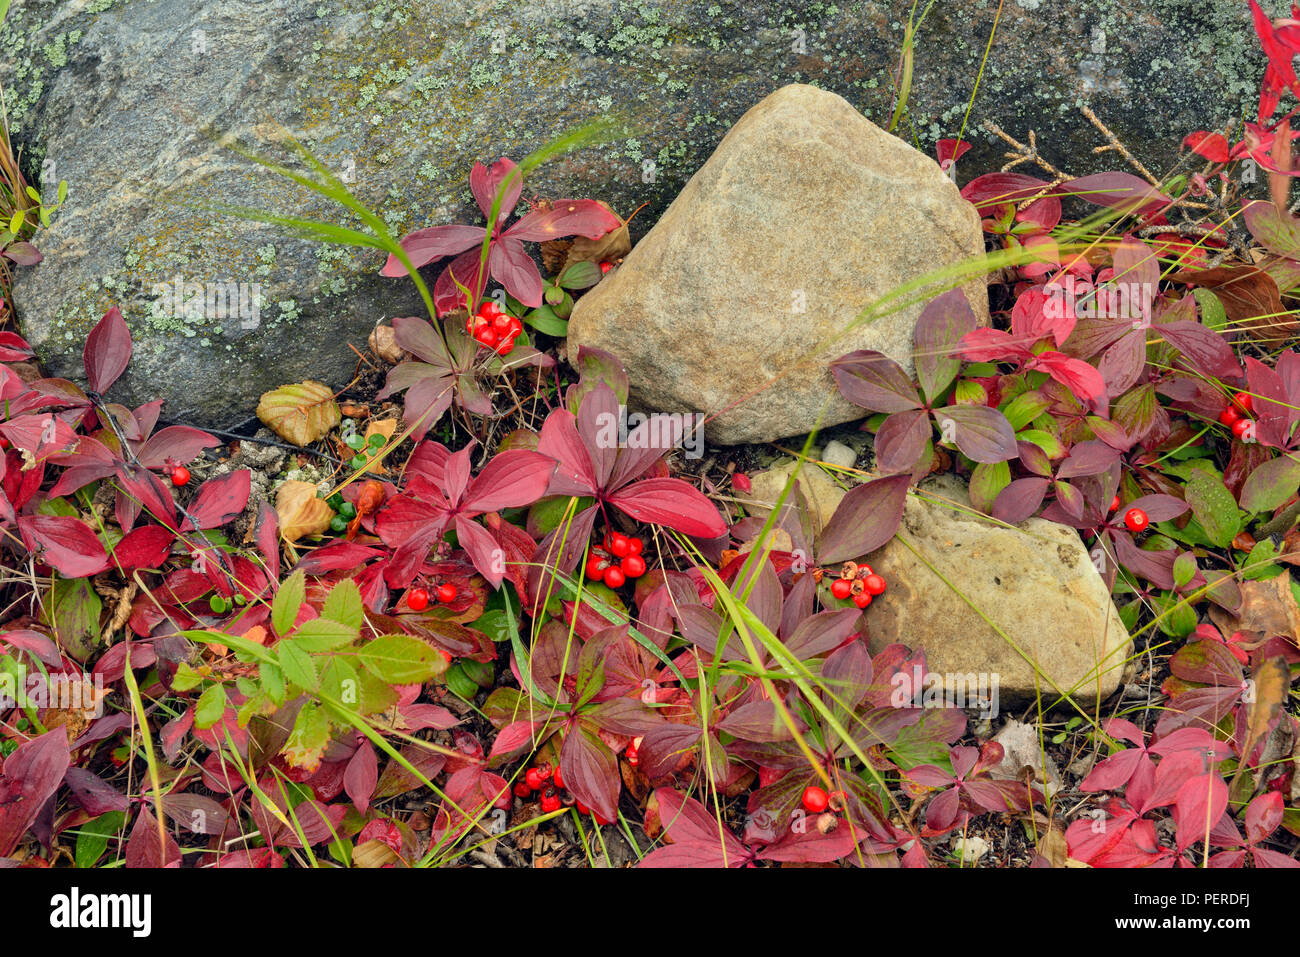 Bunchberry (Cornus Canadensis) in autumn colour, North Arm Territorial Park, Northwest Territories, Canada Stock Photo